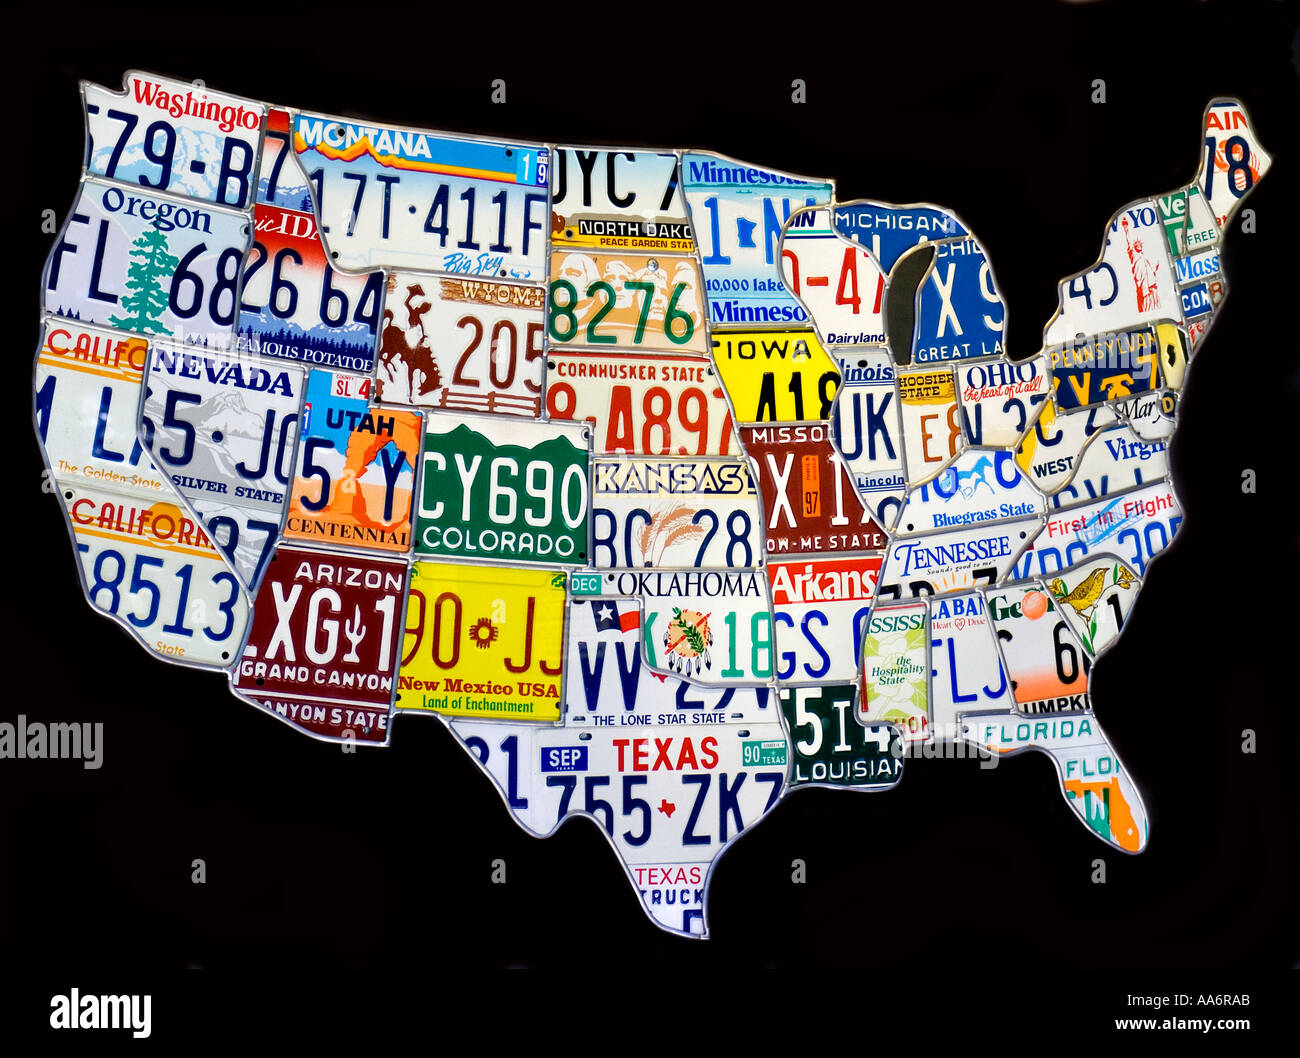 USA Karte von Amerika Collage Auto Reg Nummernschilder Vereinigte Staaten von Amerika aus geographisch platzierten Metall Kfz-Kennzeichen Kennzeichen Stockfoto